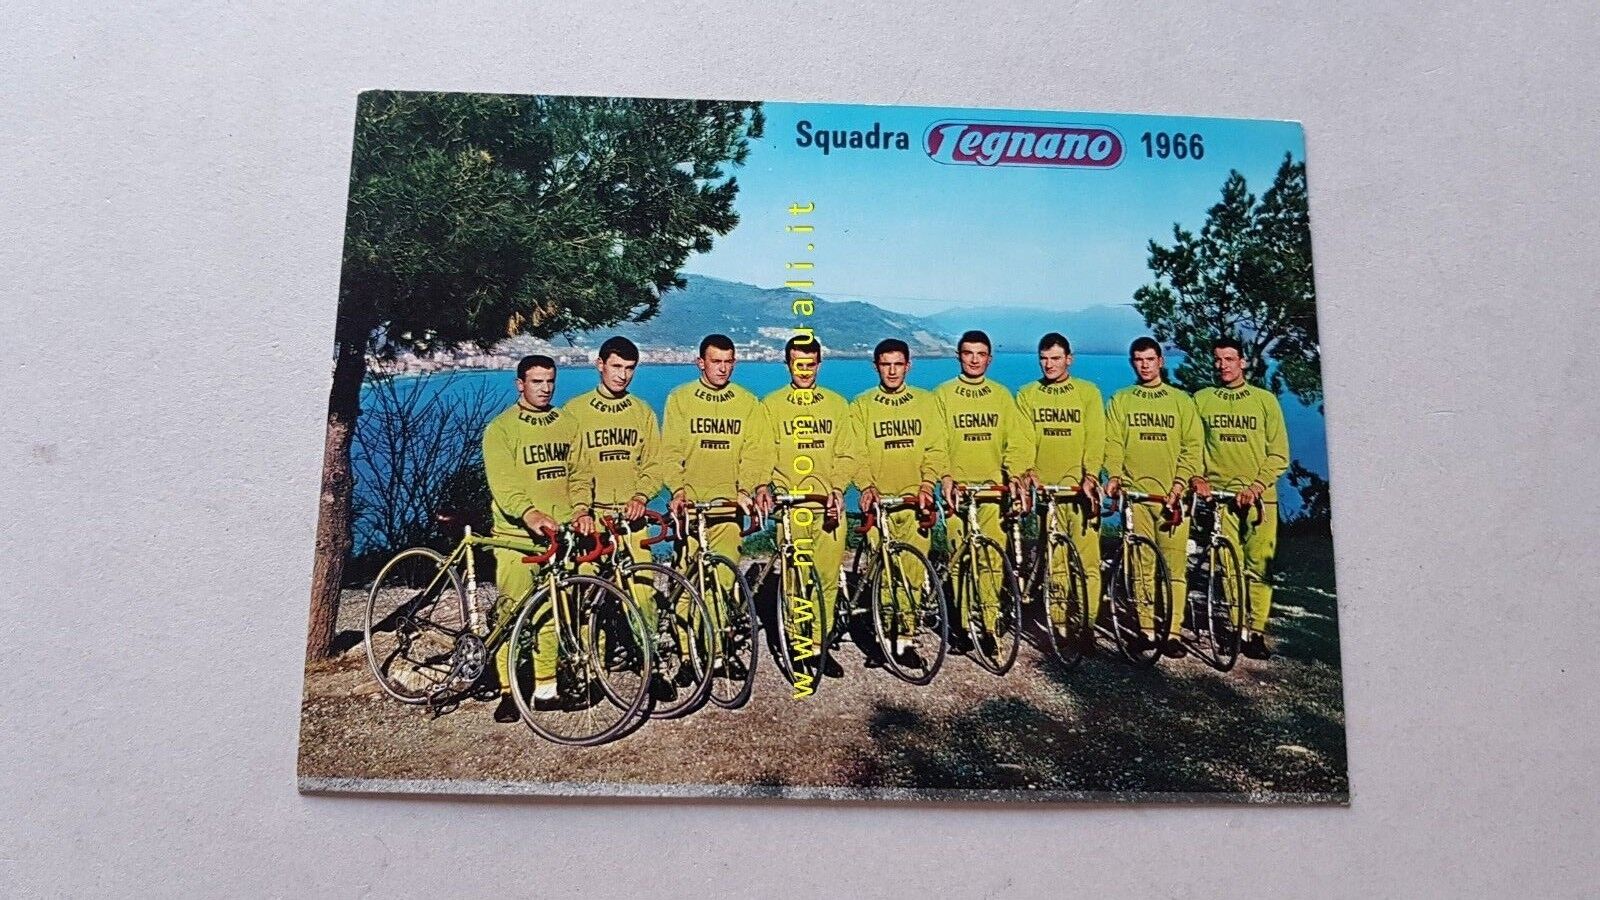  Legnano biciclette squadra corse 1966 cartolina pubblicitaria originale epoca